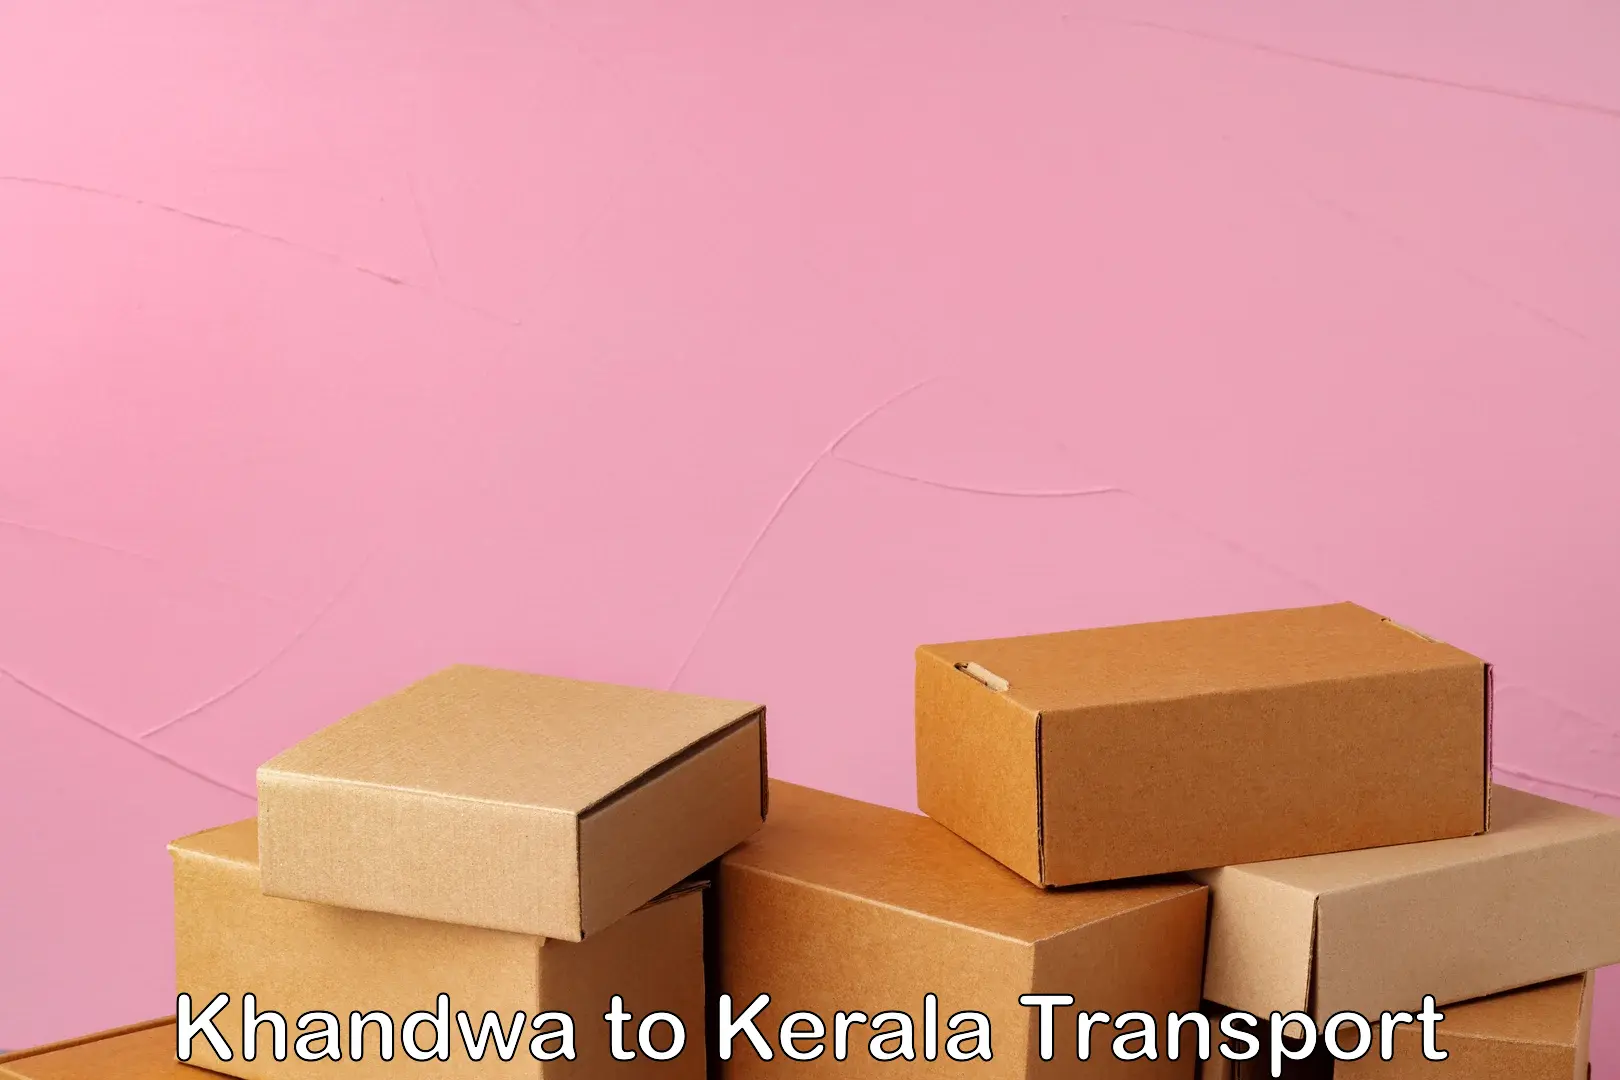 Nearby transport service Khandwa to Angamaly